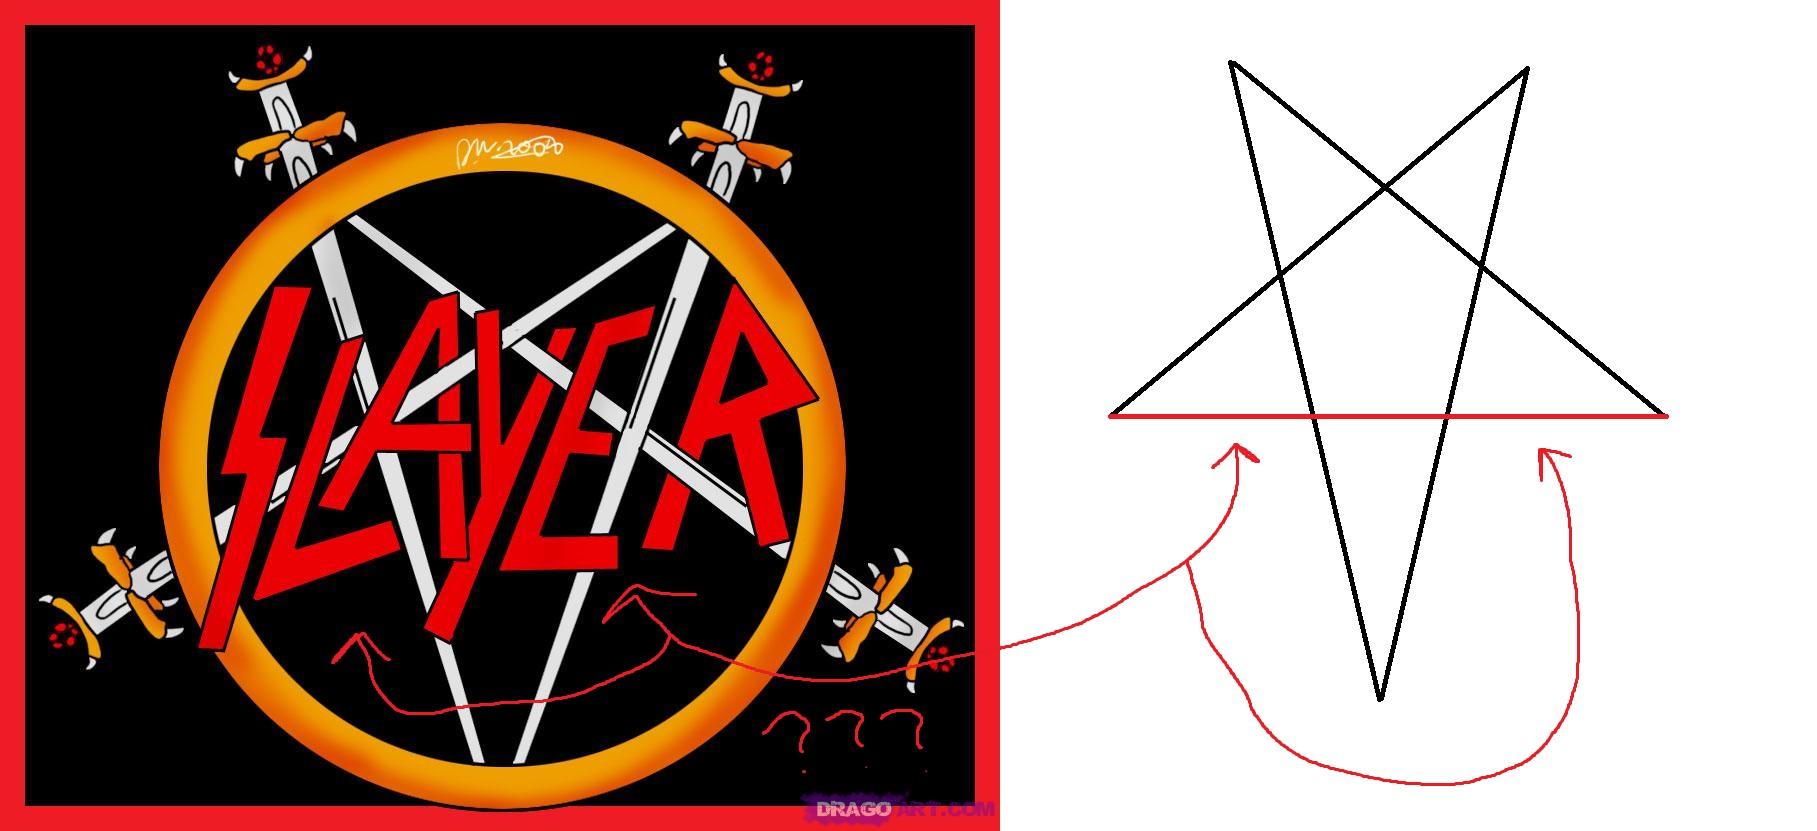 Slayer Logo - TIL: Slayer's logo is not a full pentagram; it is missing the bottom ...